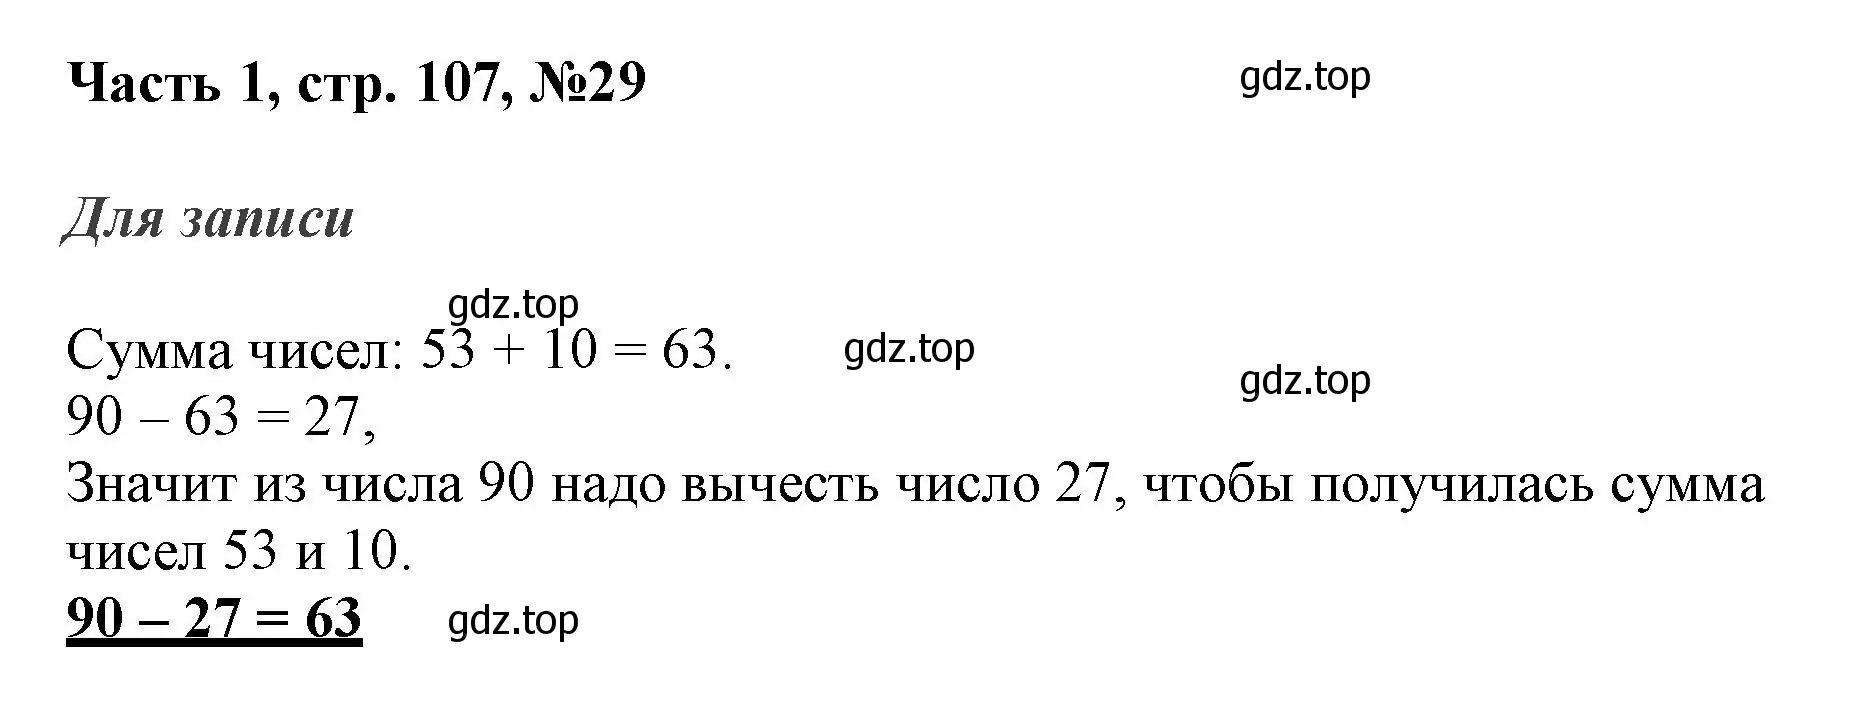 Решение номер 29 (страница 107) гдз по математике 3 класс Моро, Бантова, учебник 1 часть